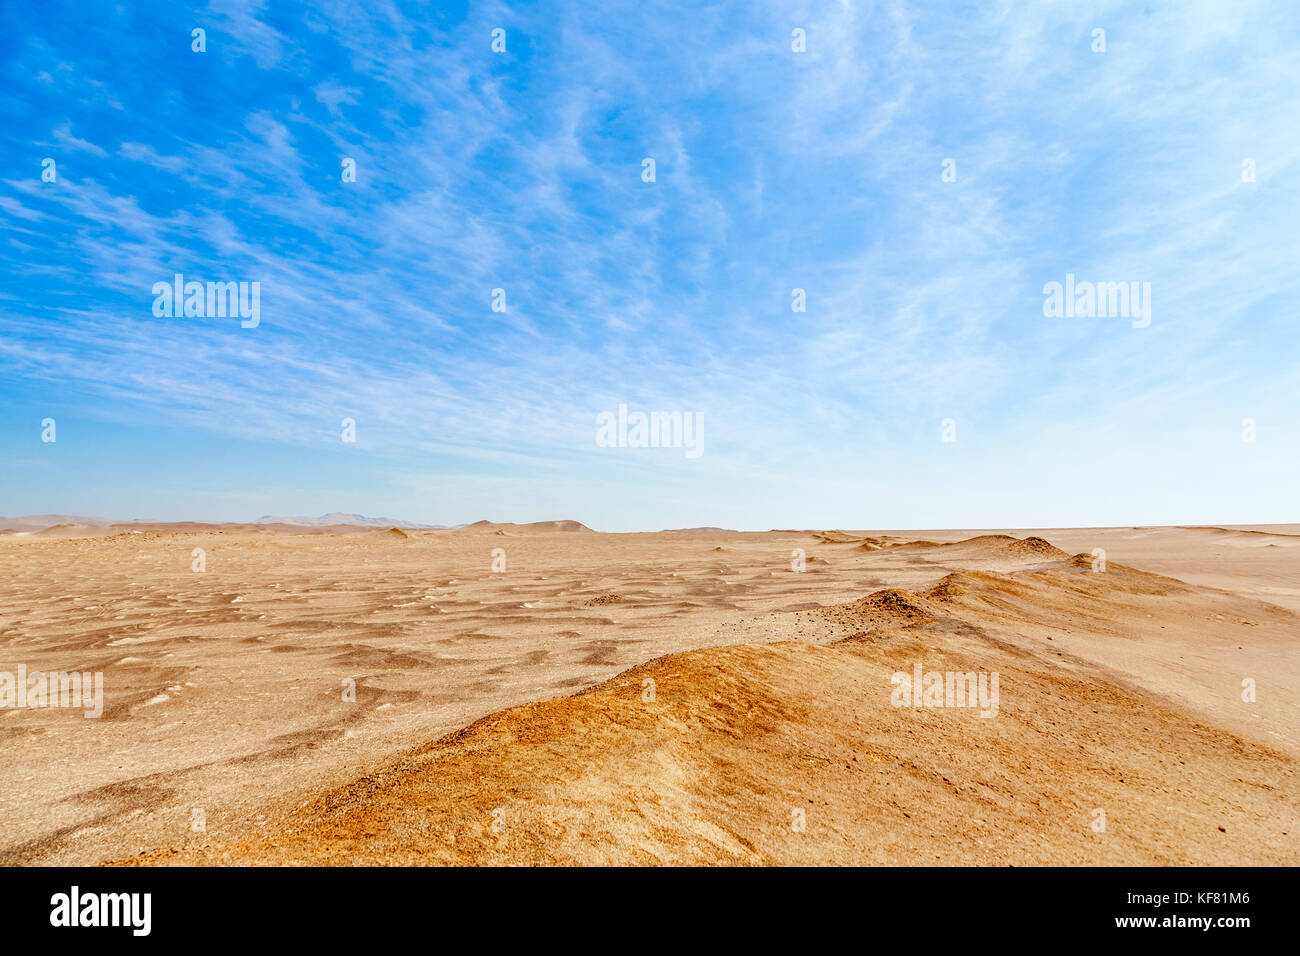 Ciel bleu avec des nuages et le jaune des sables du désert de paracas national park, Pérou Banque D'Images